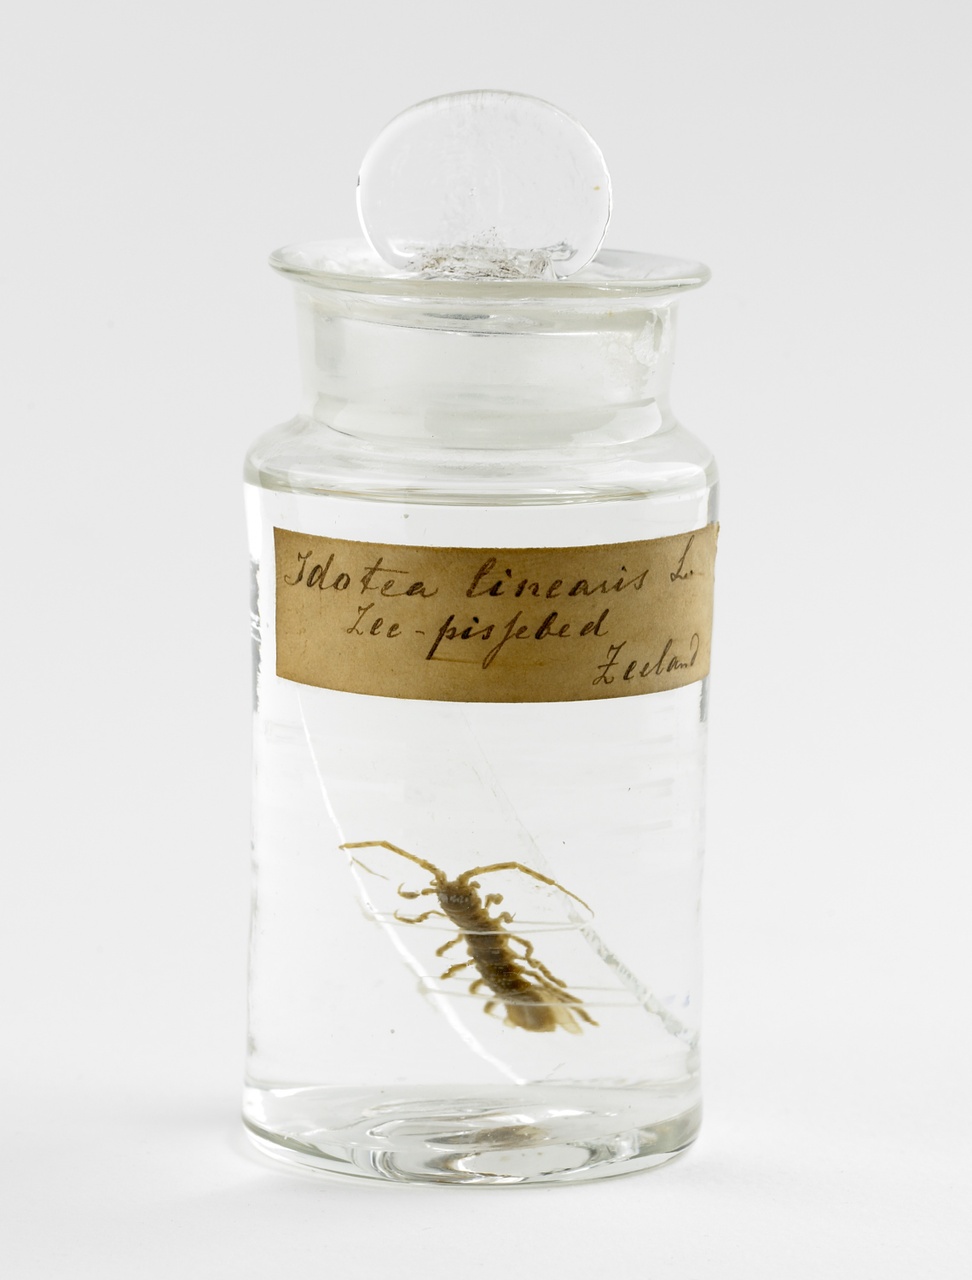 Idotea linearis (Linnaeus, 1758), Lange zeepissebed, alcoholpreparaat